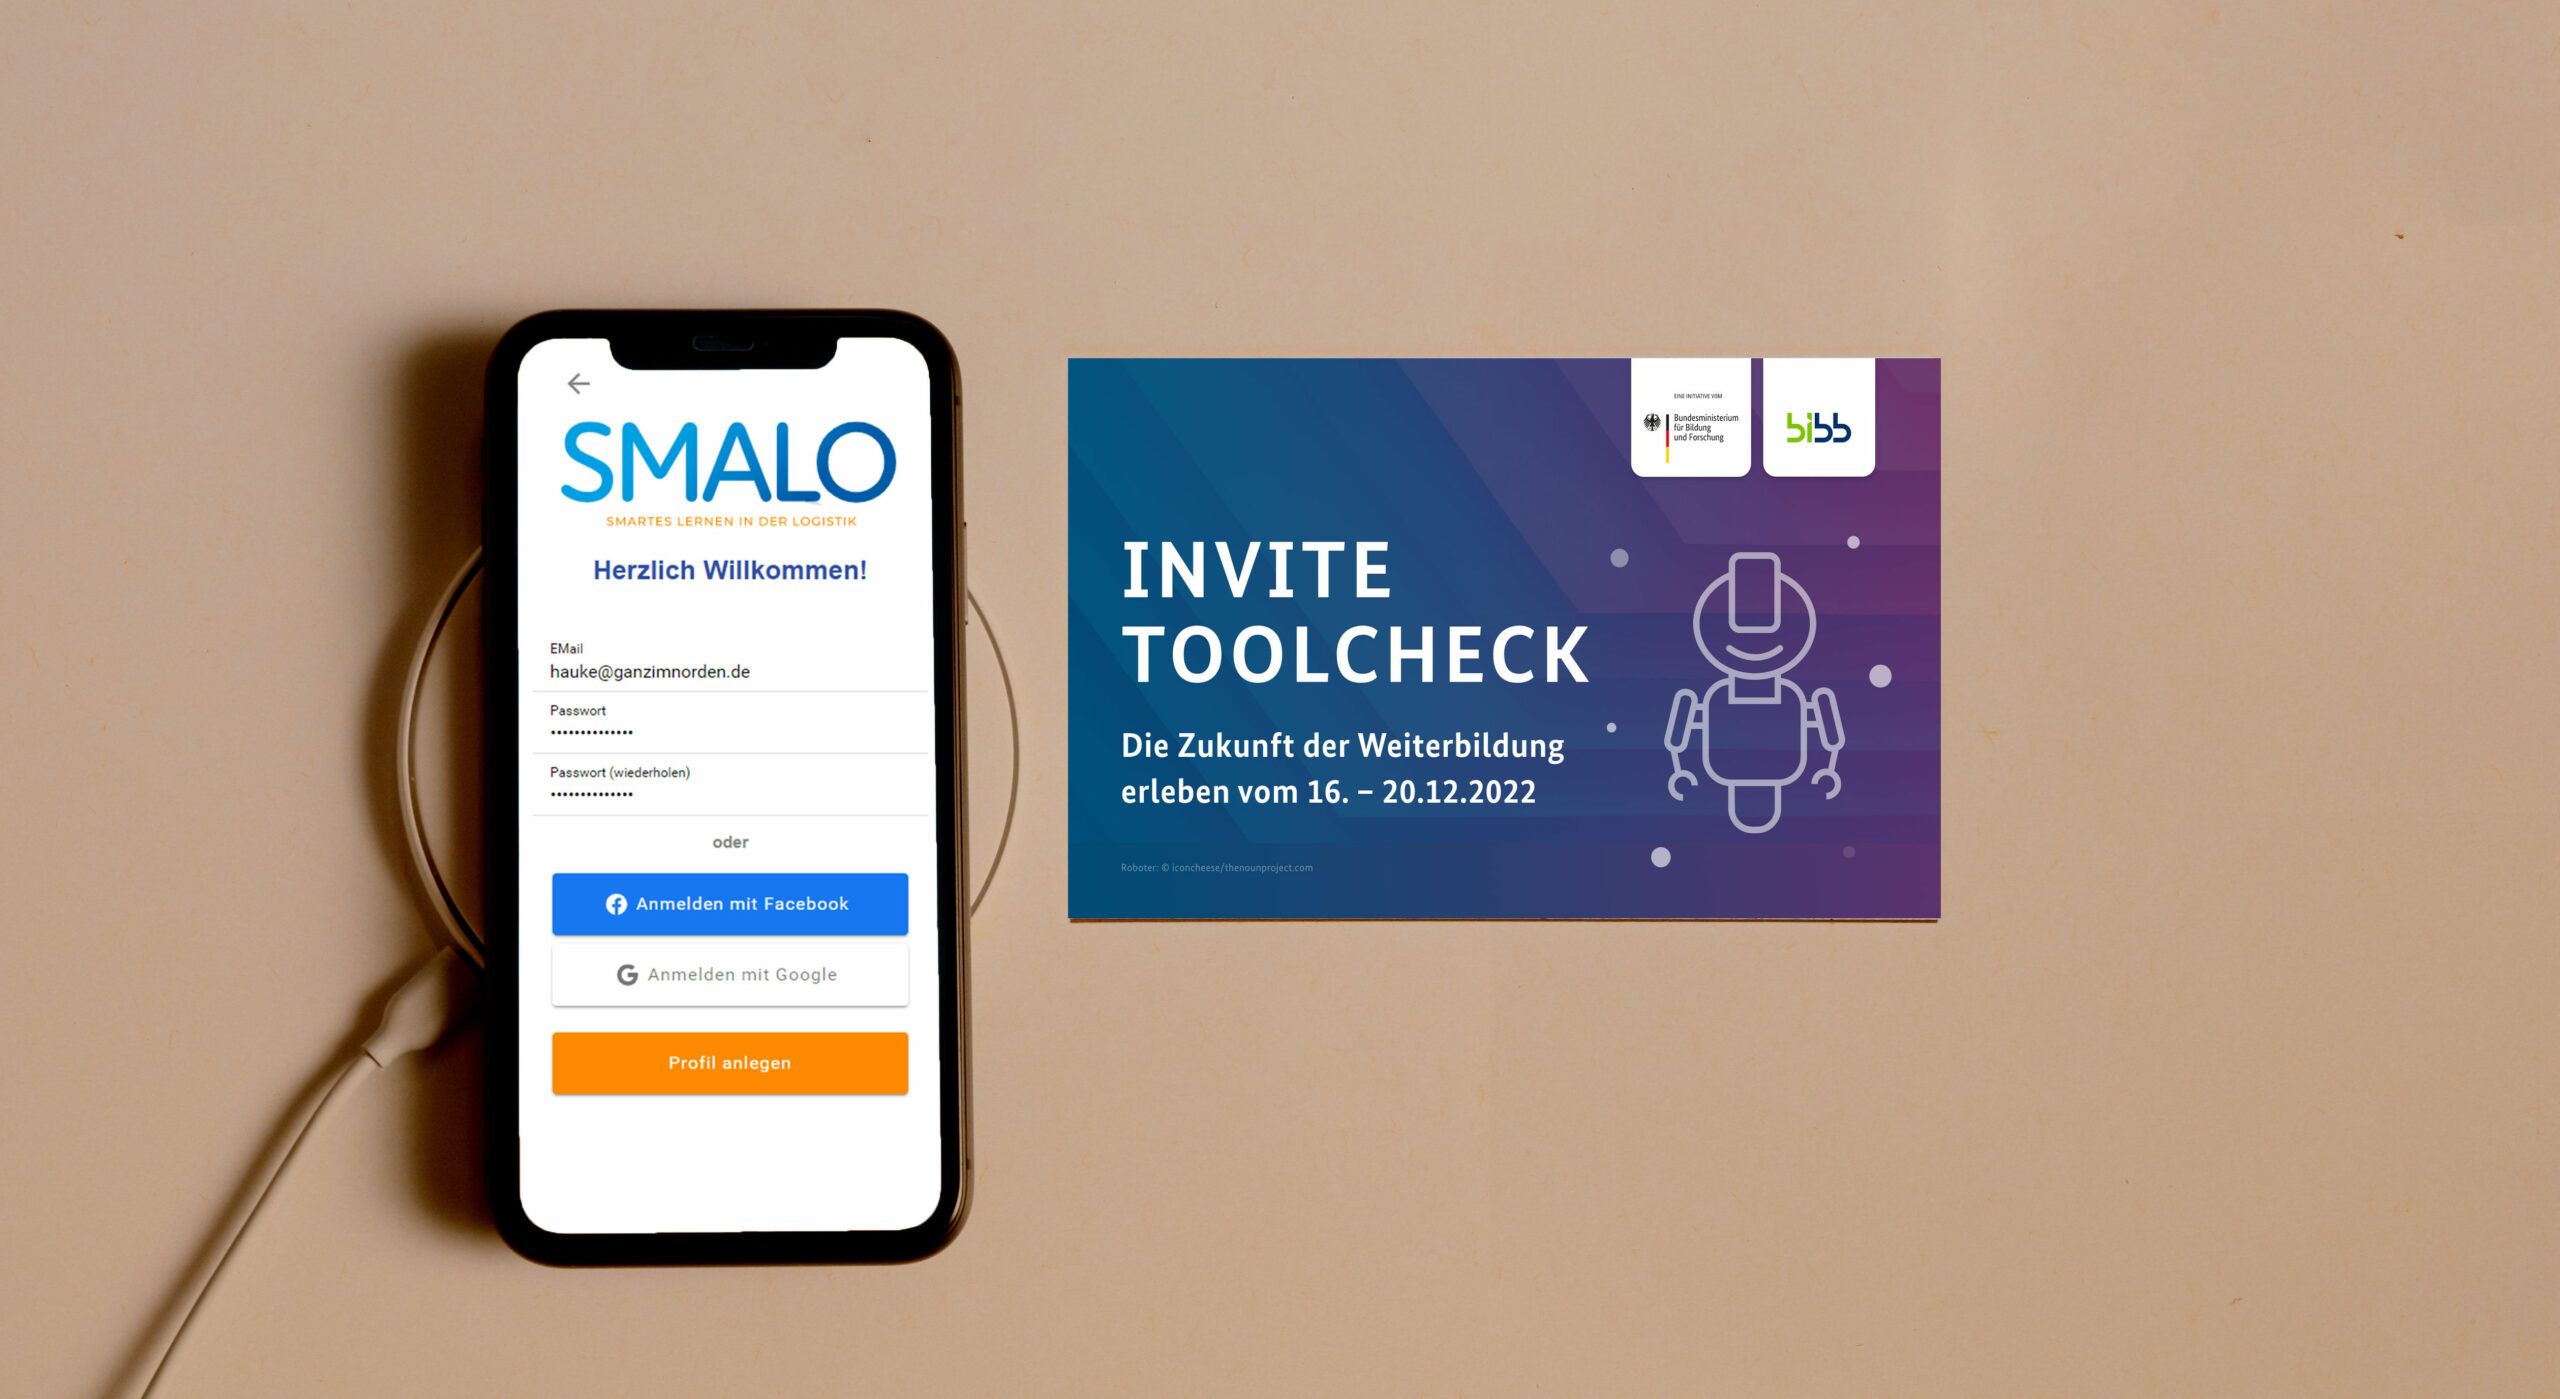 Sie sehen ein Smartphone auf dem die SMALO Lernplattform geöffnet ist sowie die Einladung zum INVITE ToolCheck.